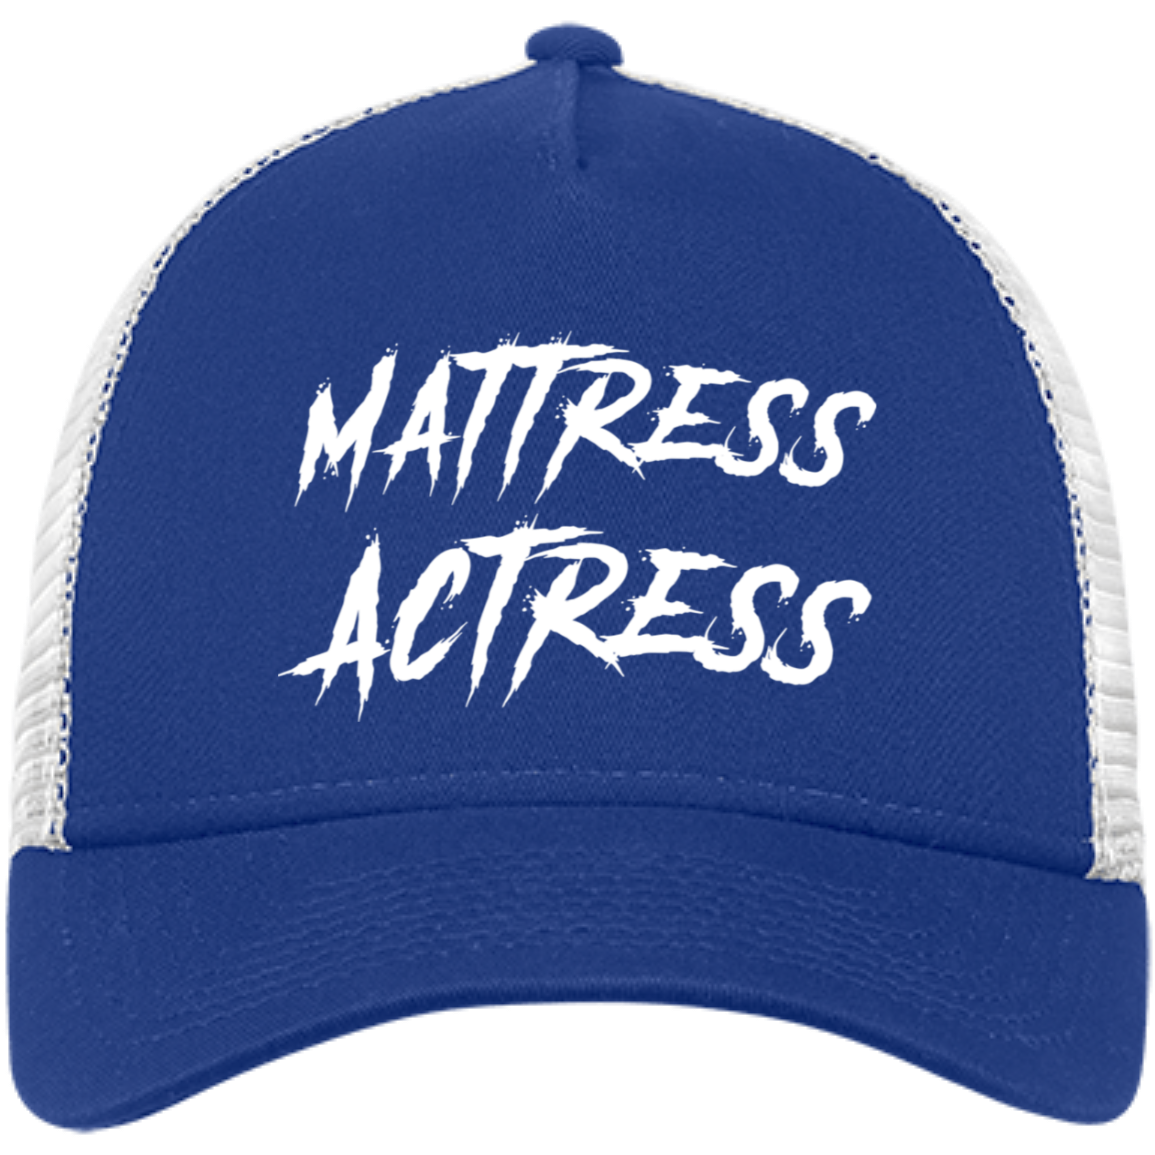 "Mattress Actress" Embroidered Snapback Trucker Cap